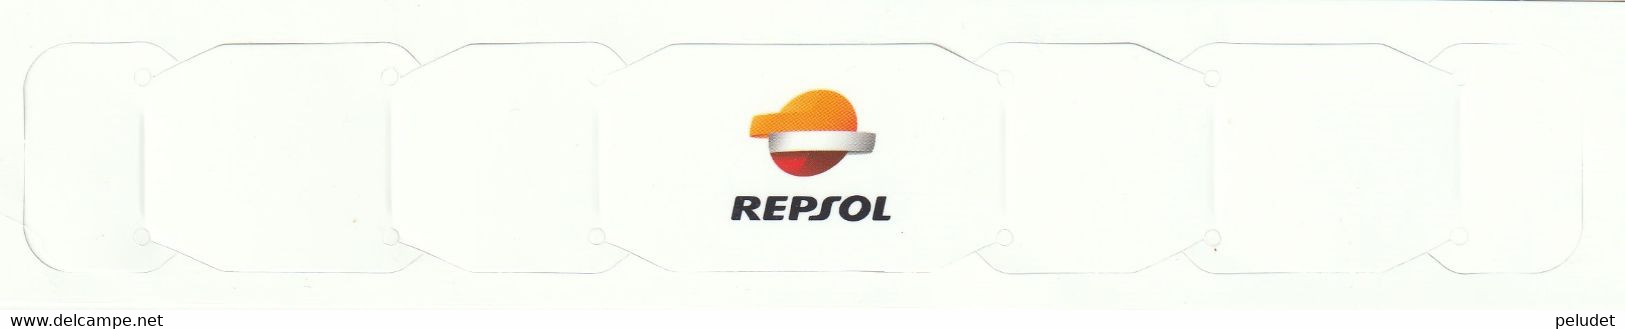 REPSOL - Sujeta Mascarilla De Cartón, Porte-masque En Carton, Cardboard Mask Holder - Material Und Zubehör